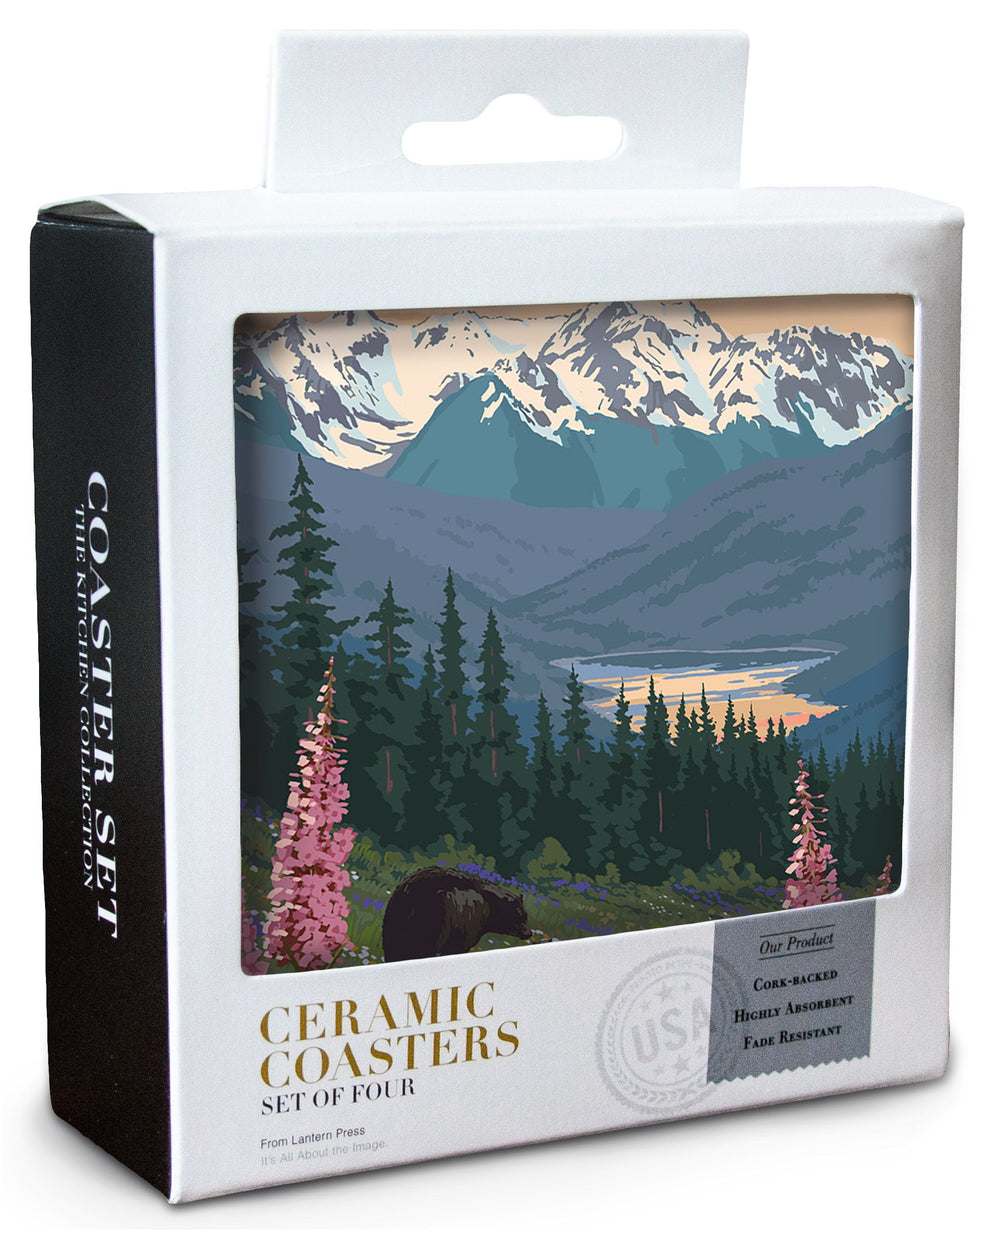 Lake Cushman, Washington, Bear & Spring Flowers, Lantern Press Artwork, Coaster Set Coasters Lantern Press 